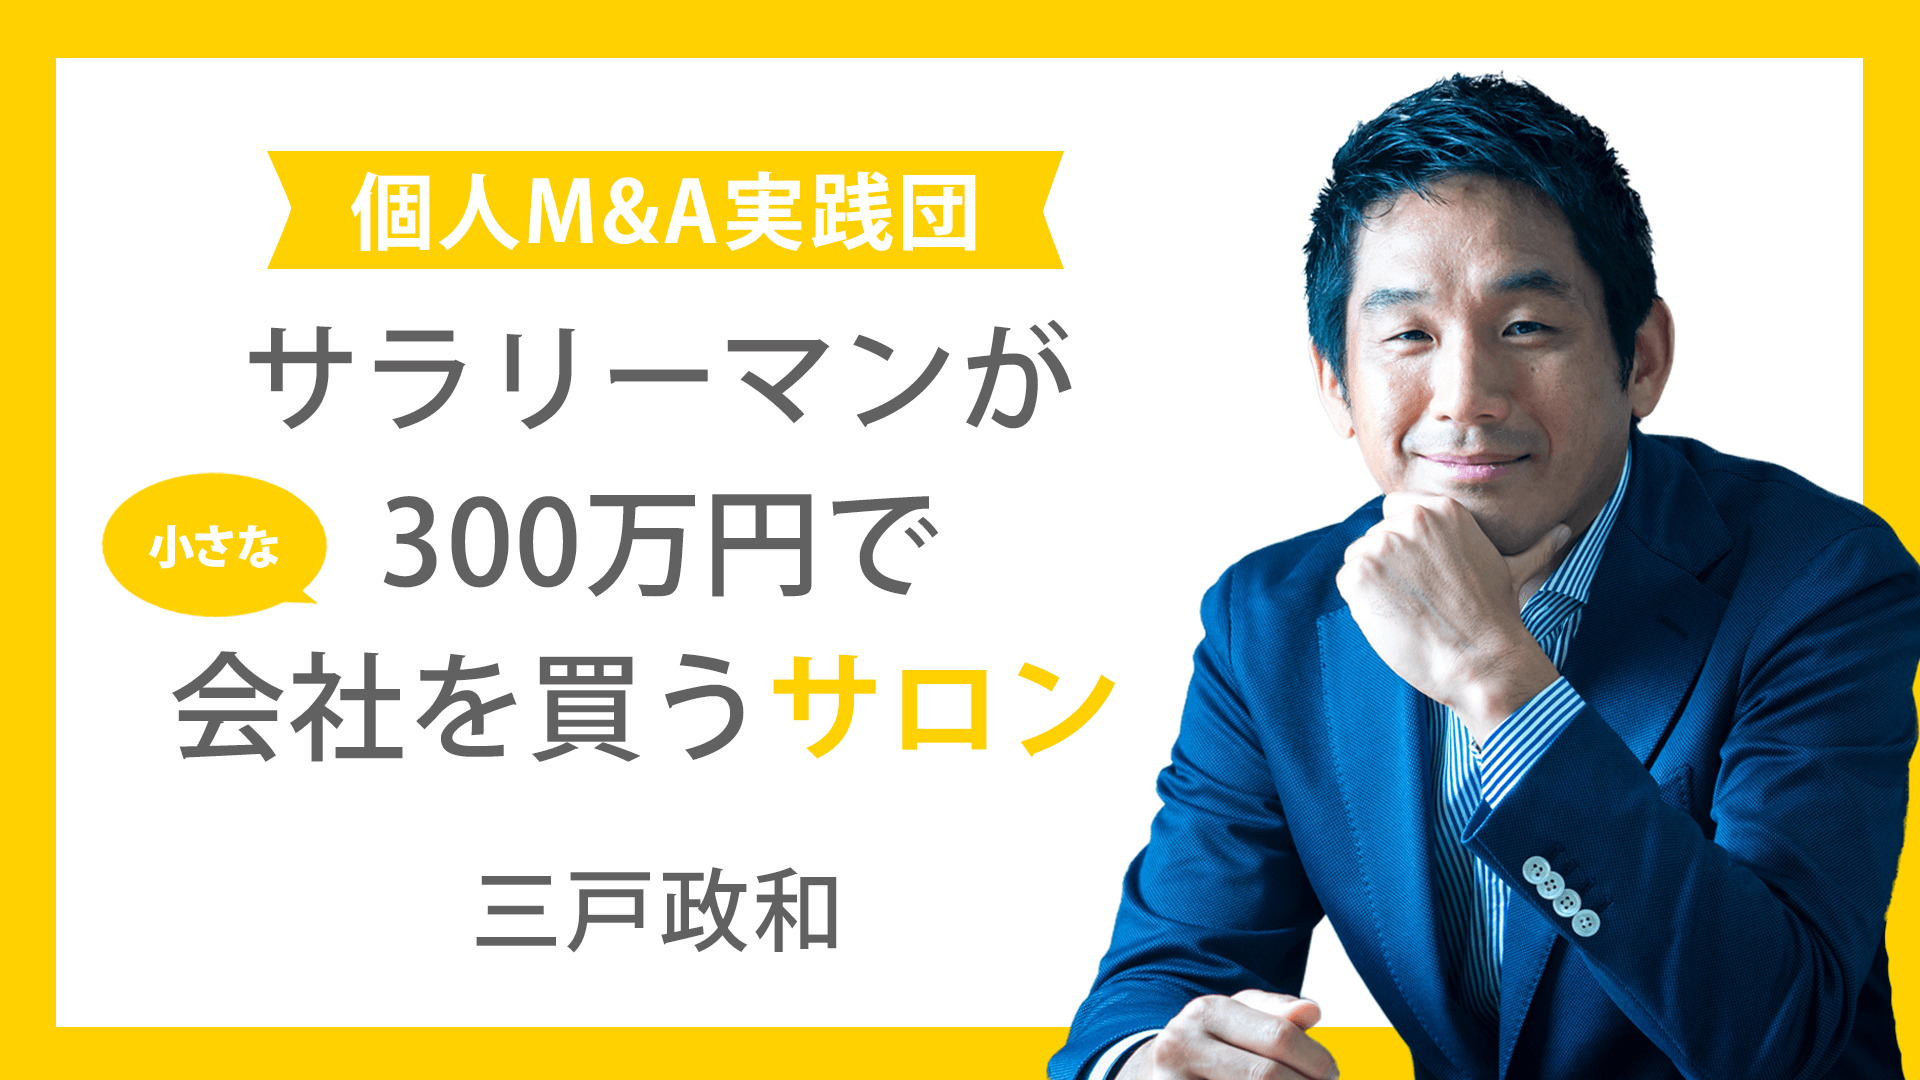 三戸政和 - サラリーマンが300万円で小さな会社を買うサロン - DMM オンラインサロン